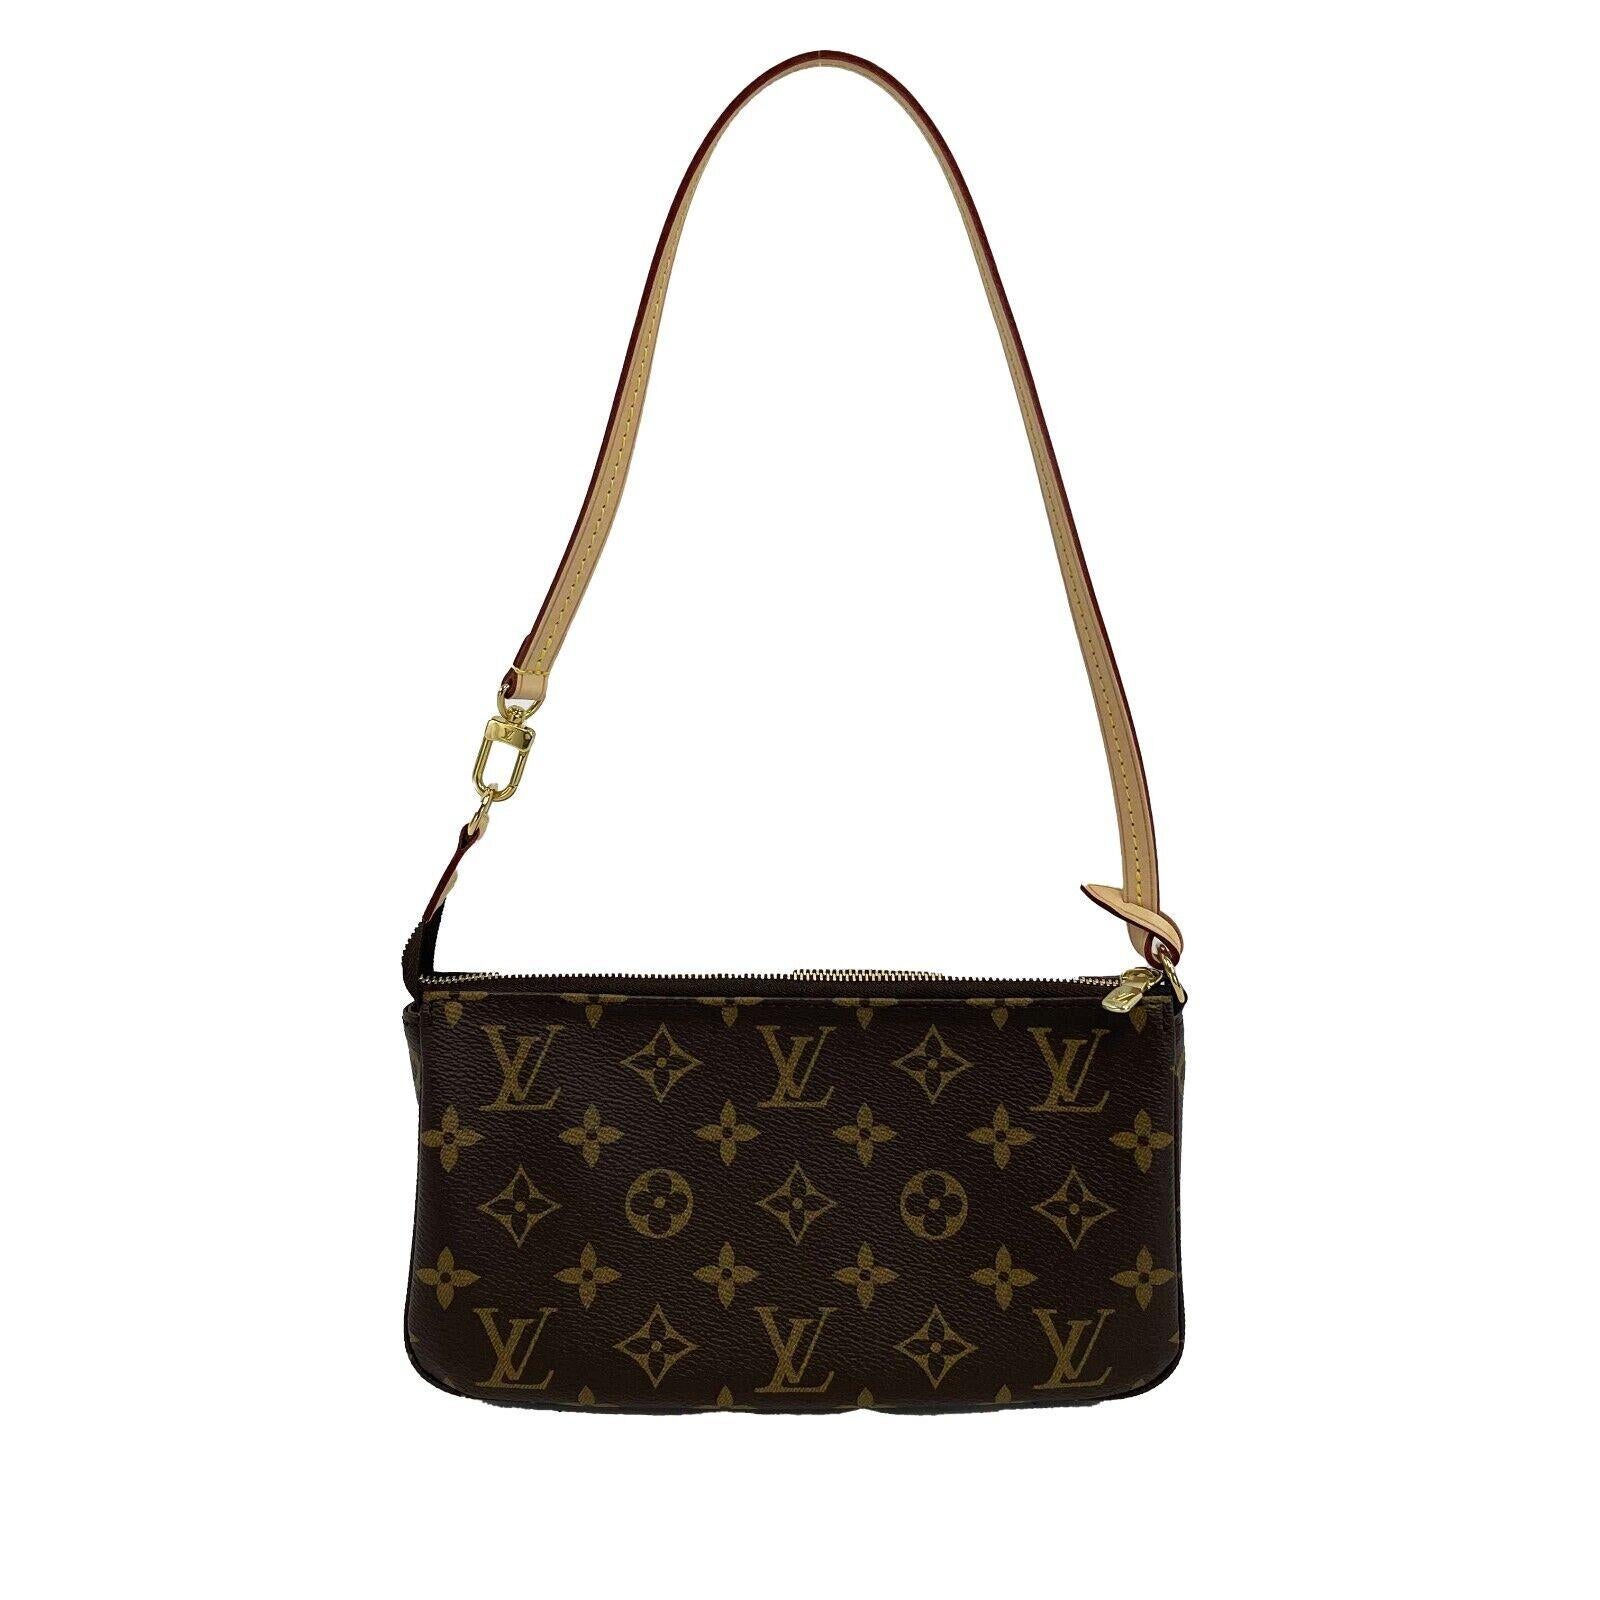 Louis Vuitton - New w/o Tags - Pochette - Brown - Handbag

Description

- Authentic LOUIS VUITTON Monogram Pochette
- In Monogram canvas
- Natural cowhide leather trimmings
- Zipper closure
- Golden color metallic pieces
- Textile lining
- Strap is